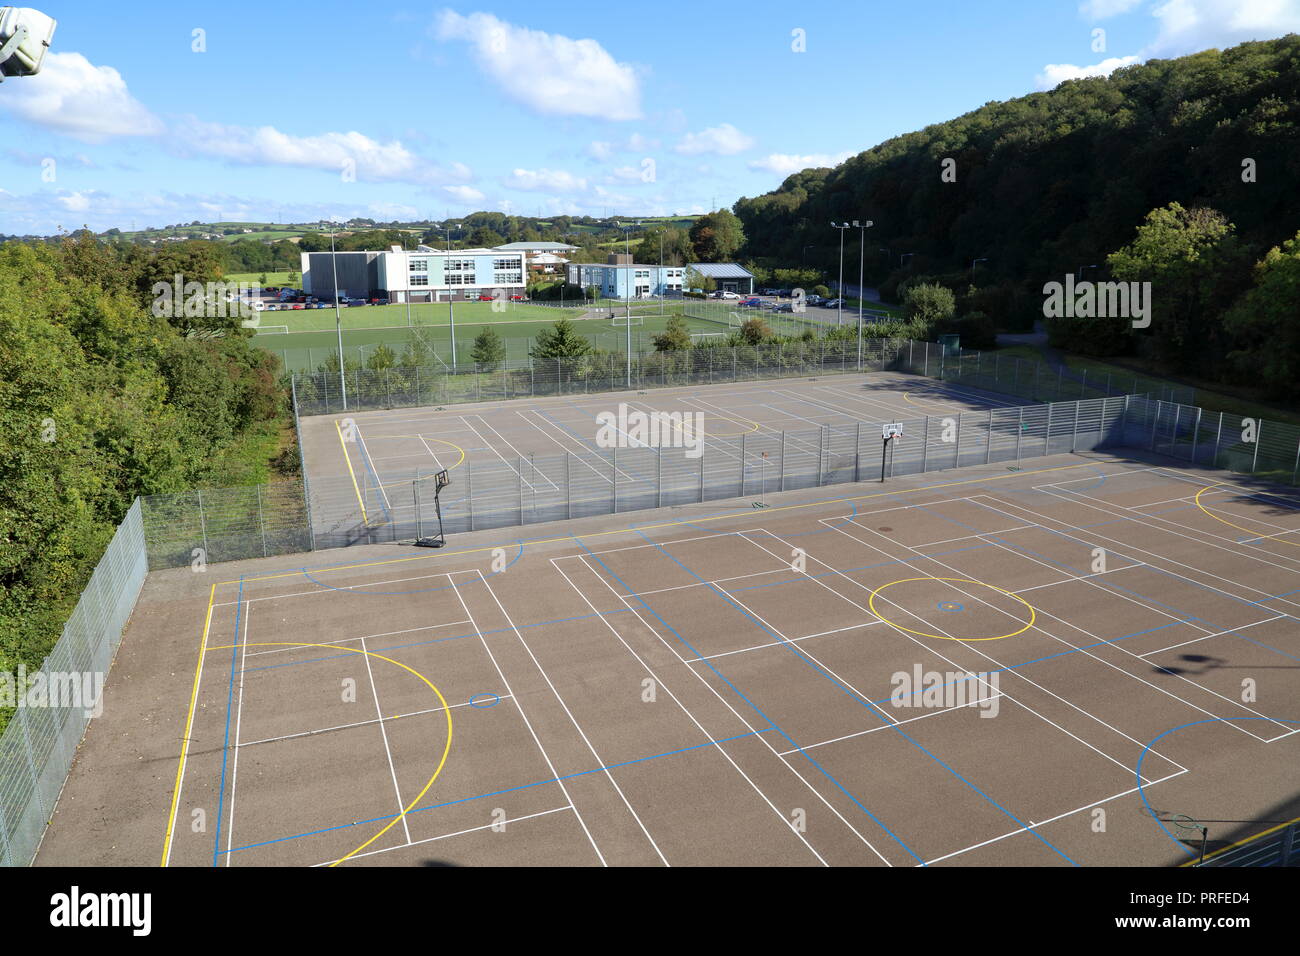 Cowbridge Schule gesehen von der A 48 Überführung in Cowbridge zeigt neue Gebäude und Tennisplätze in der gepflegten Außenanlage an einem sonnigen Tag. Stockfoto